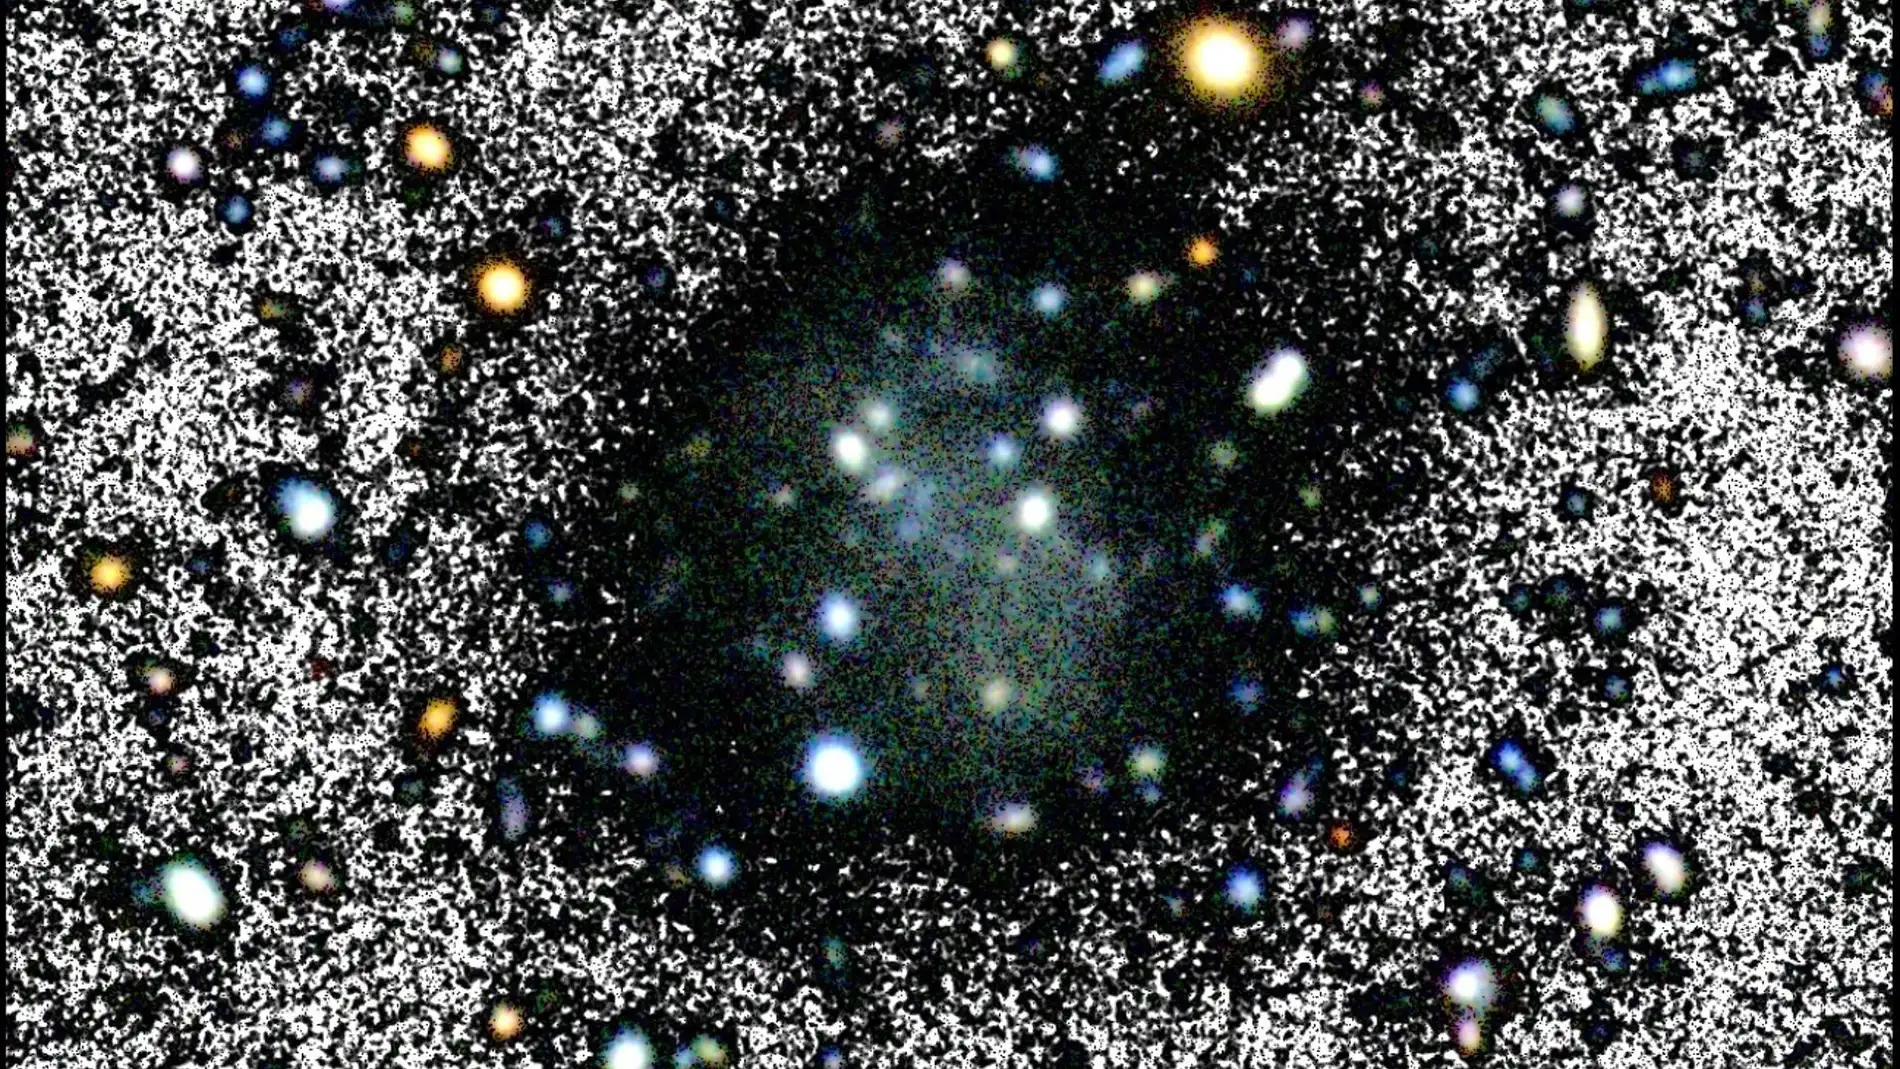 Descubren una galaxia casi invisible que desafía el modelo de materia oscura